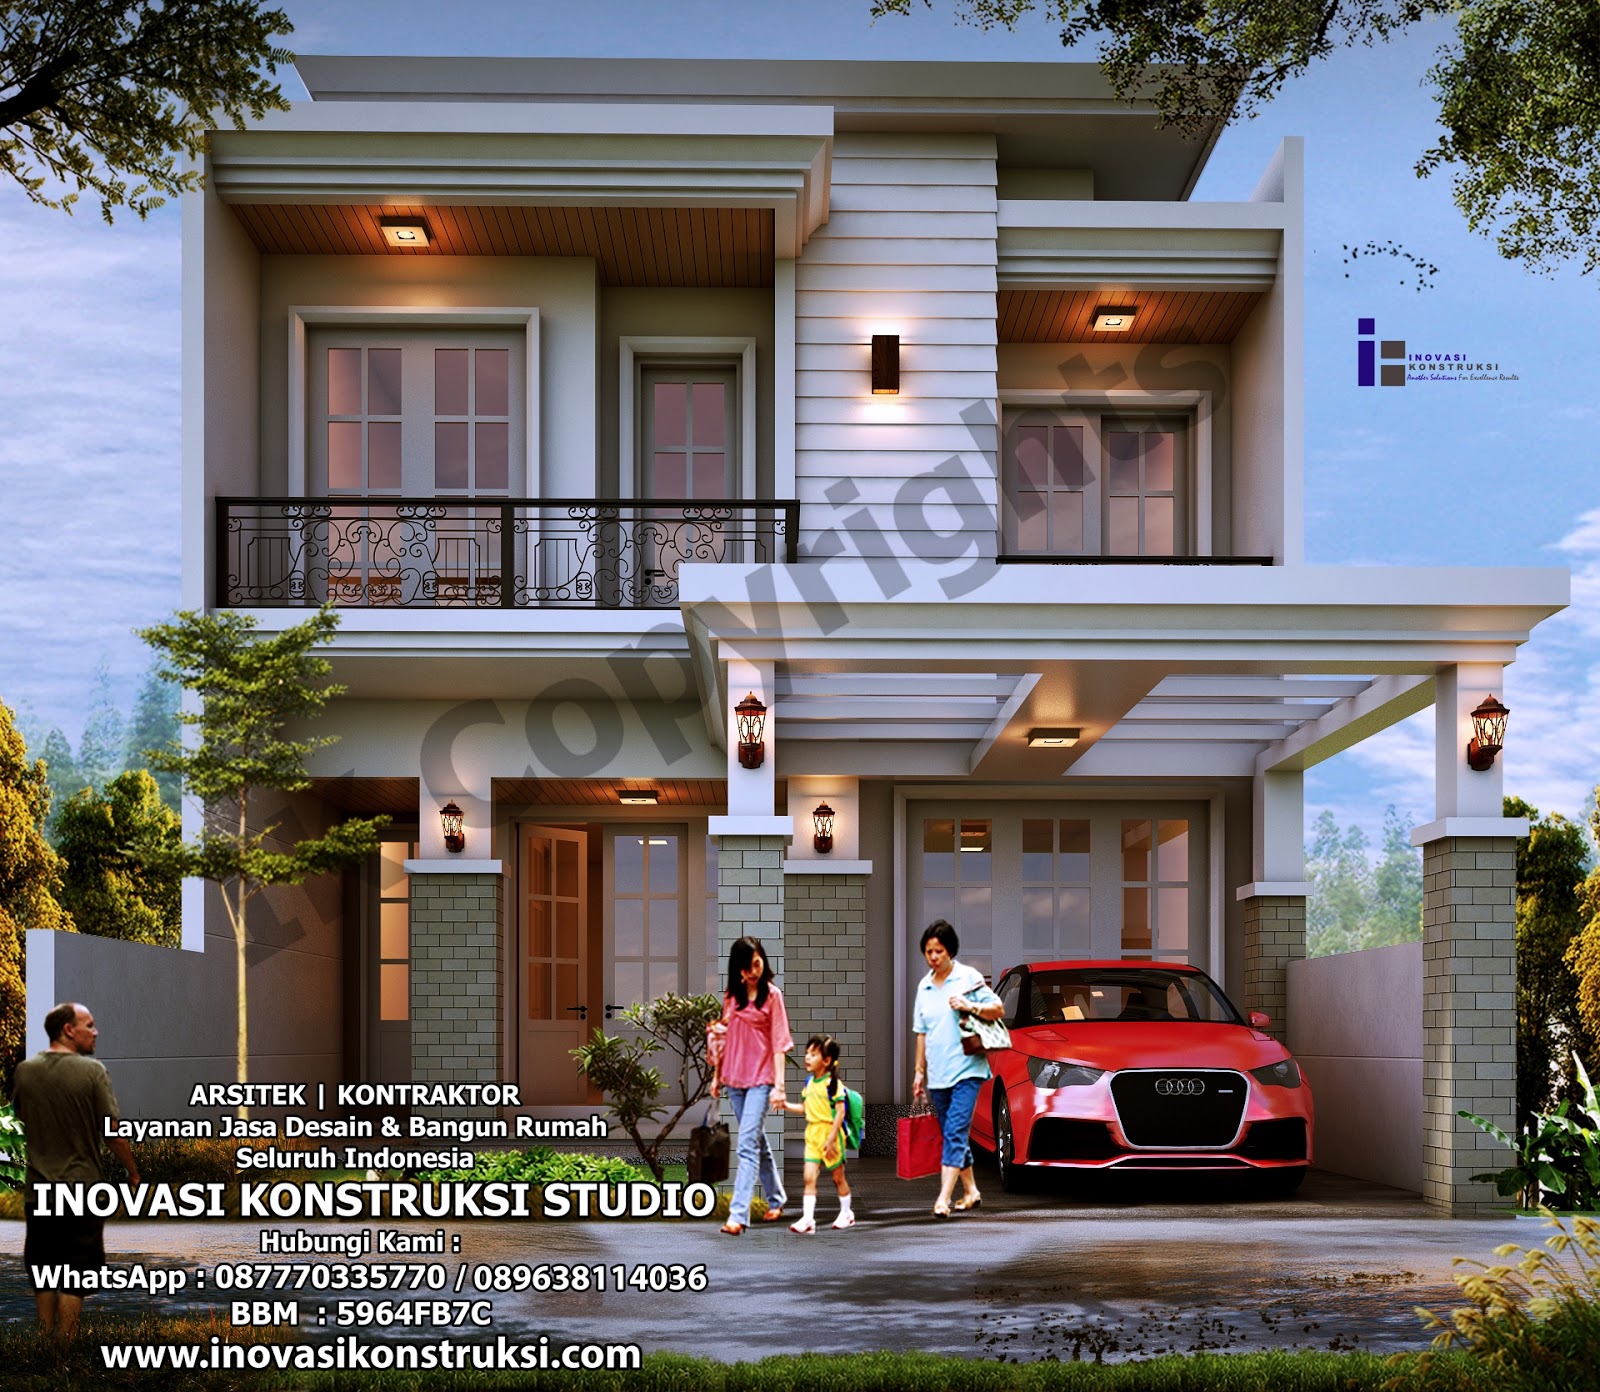 Desain Rumah Ibu Joko Di Surabaya Inovasi Konstruksi